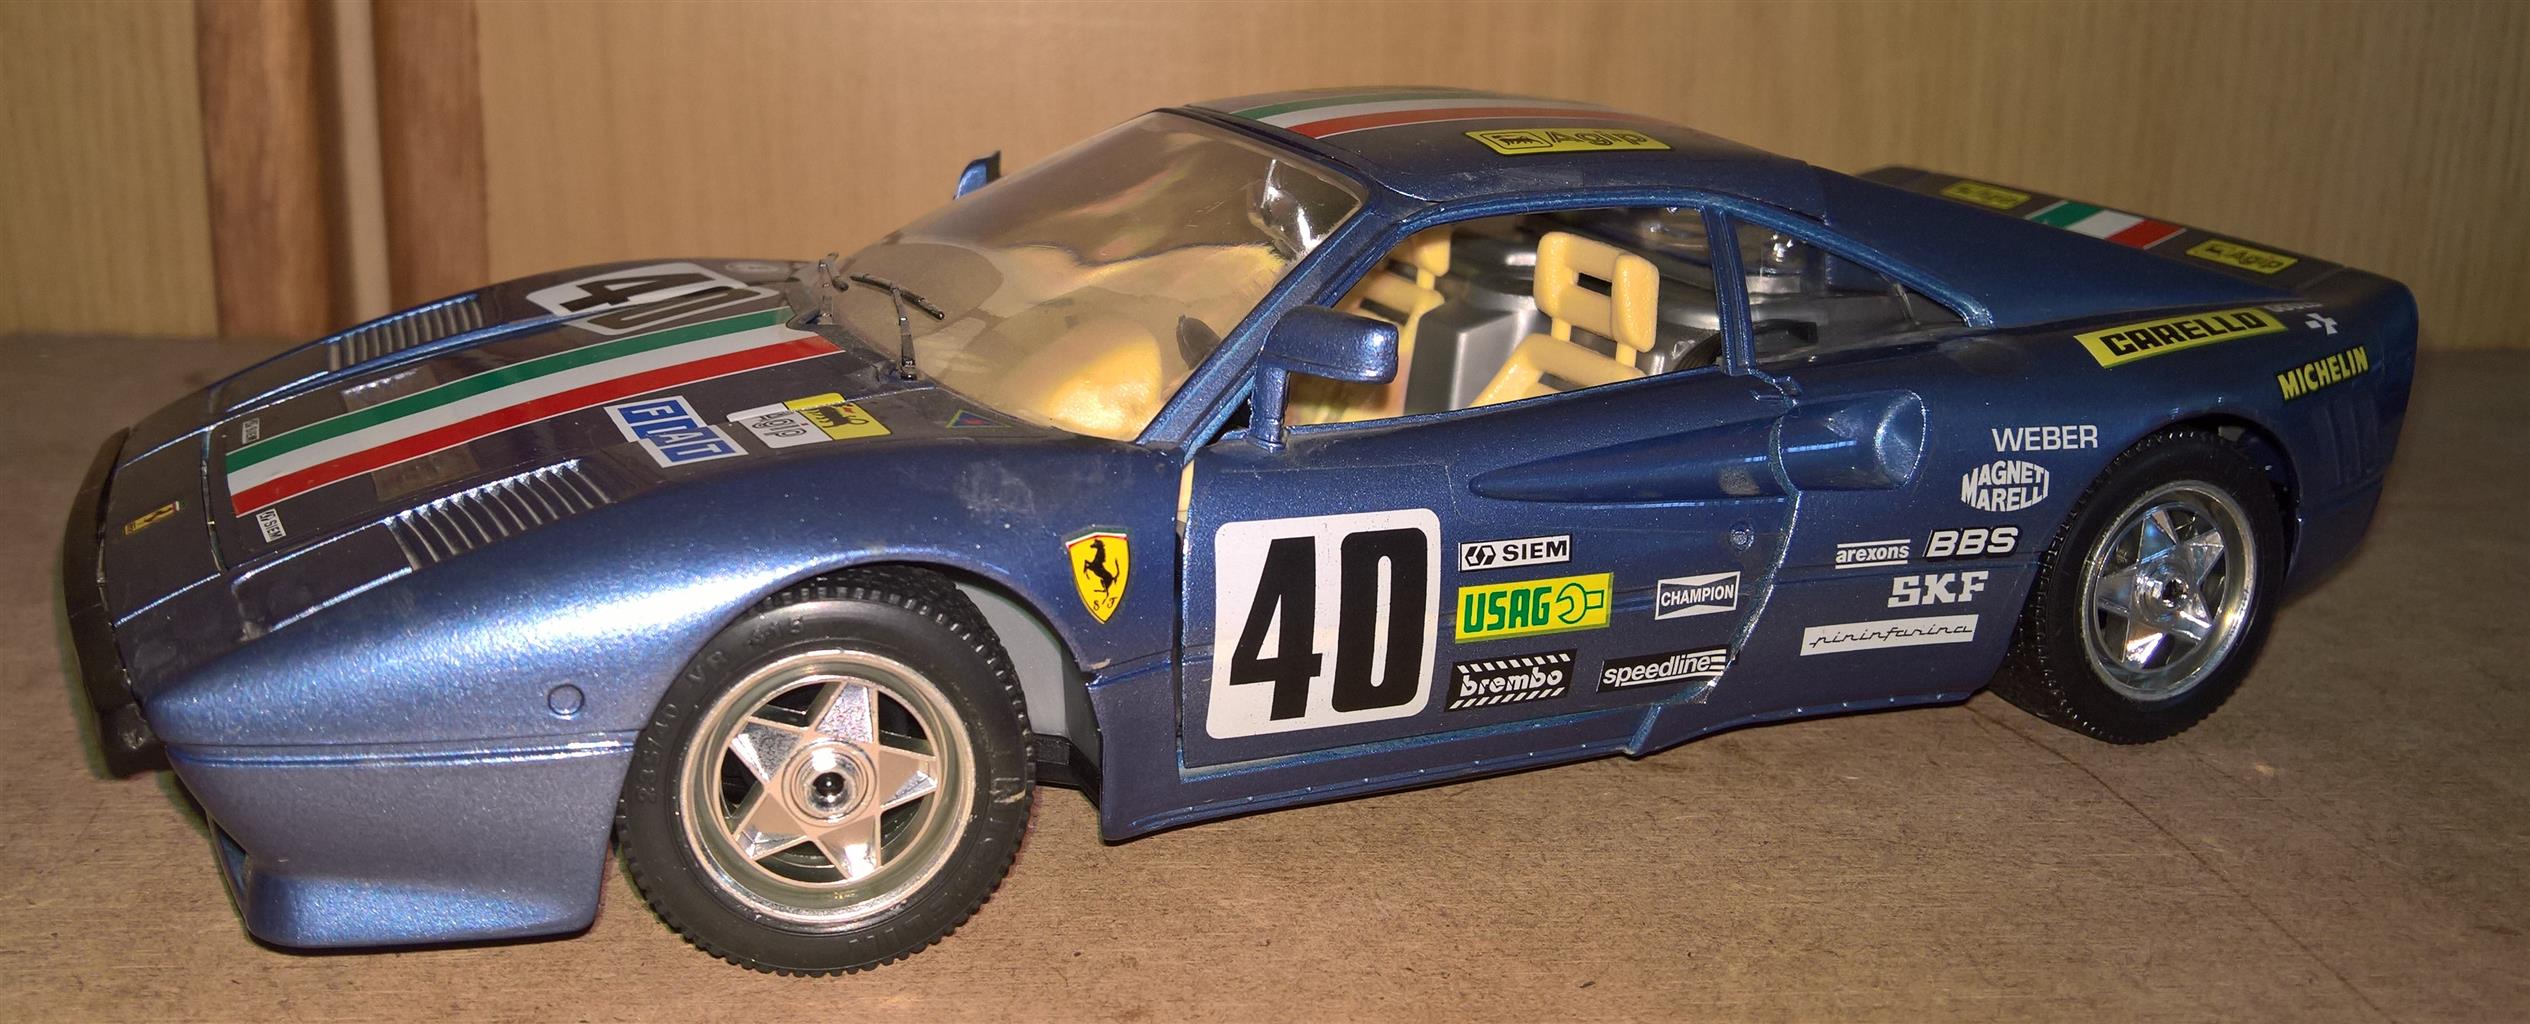 Ferrari 1:18 scale model cars for sale | Junk Mail